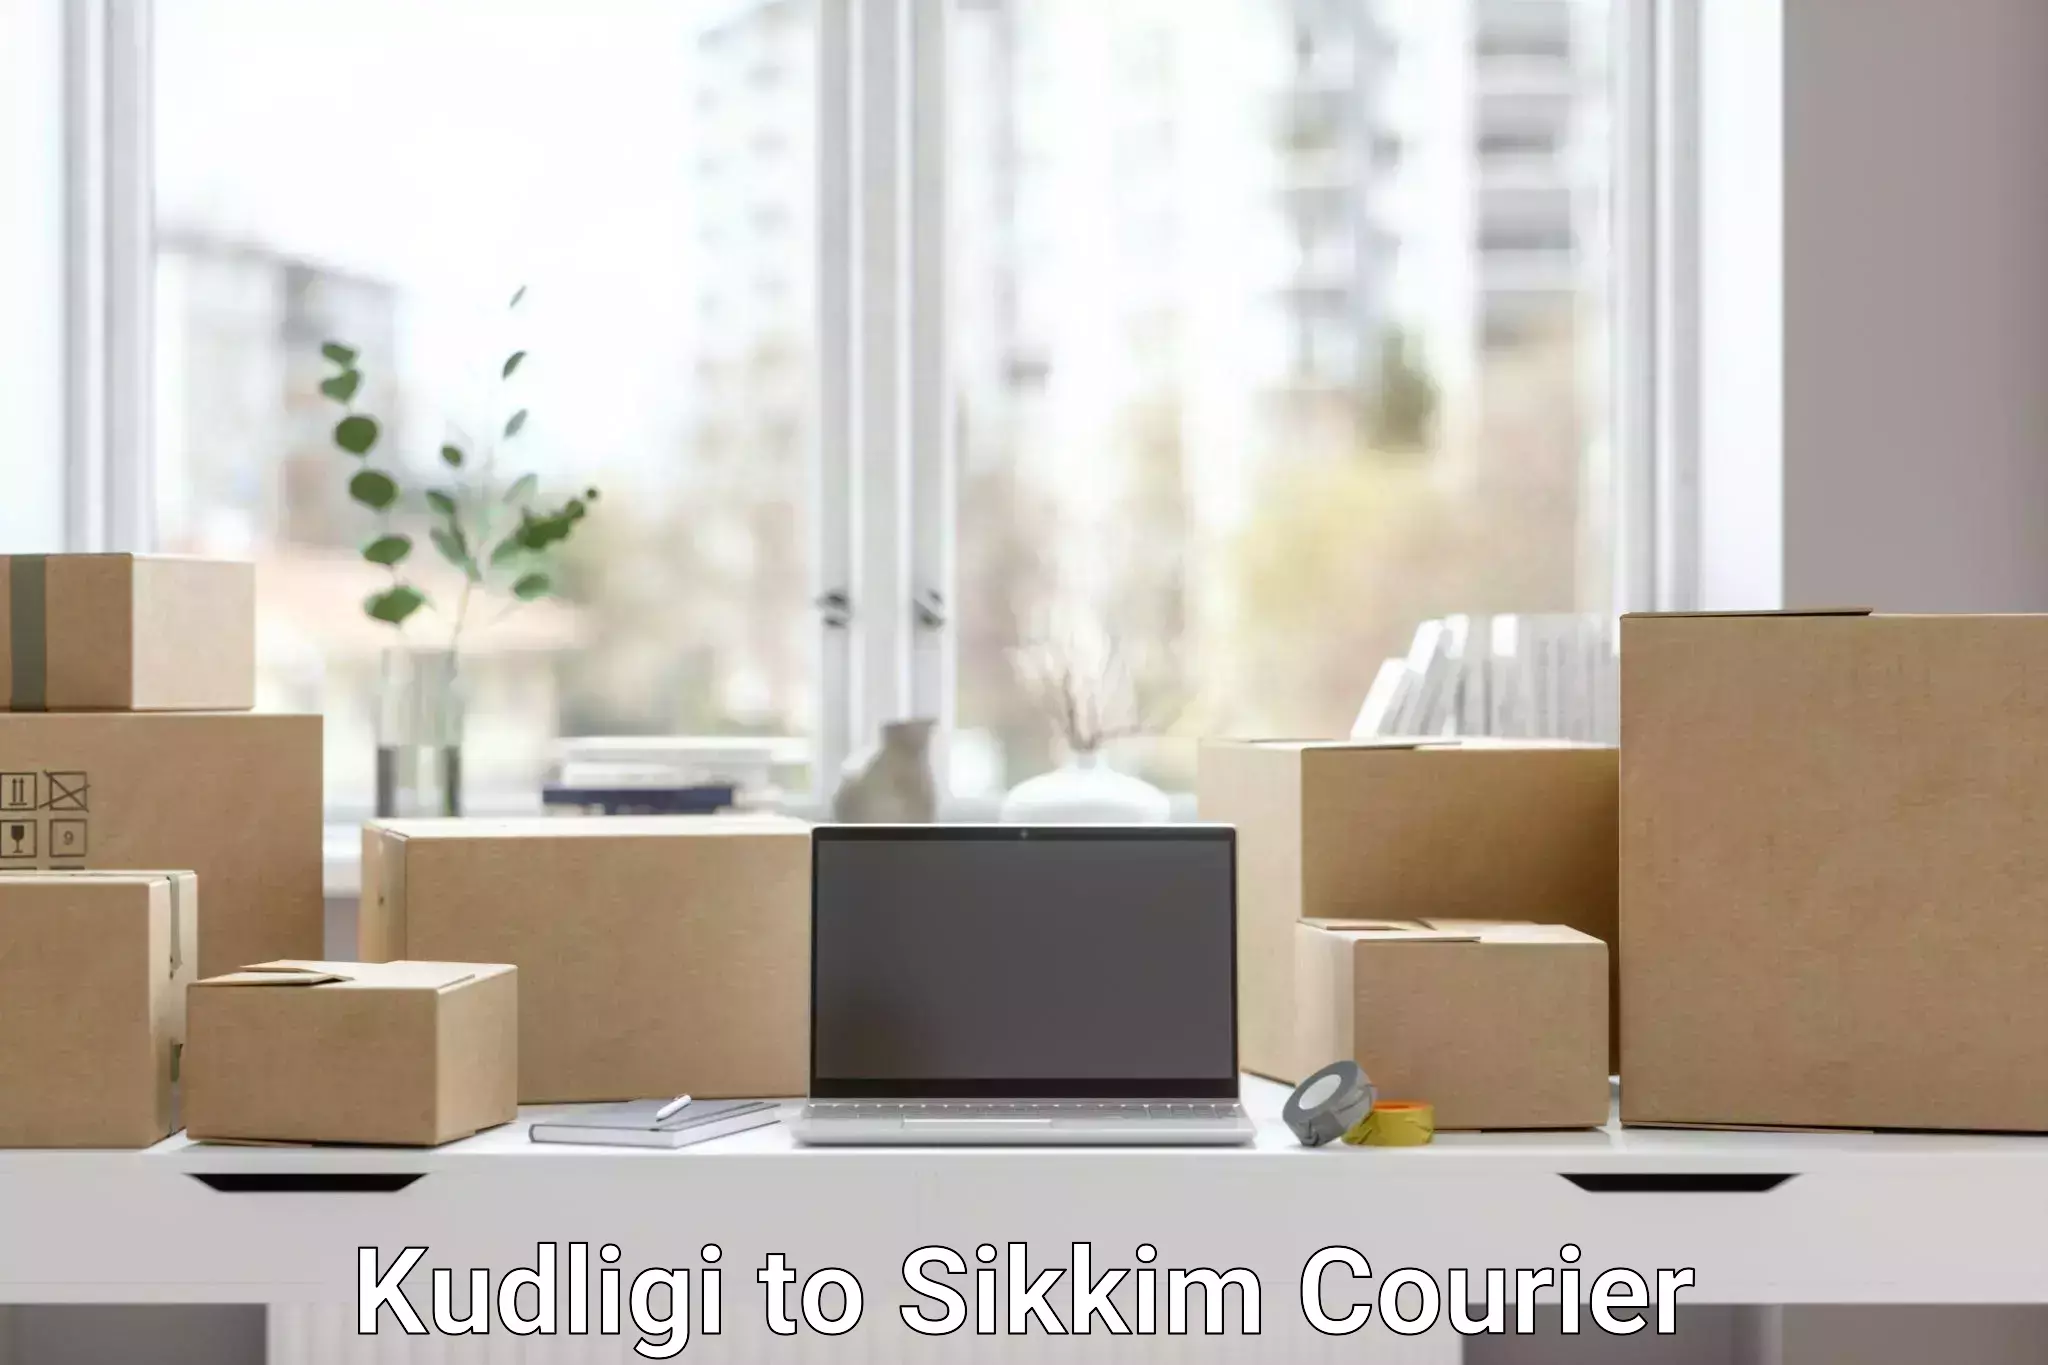 Customizable shipping options Kudligi to Sikkim